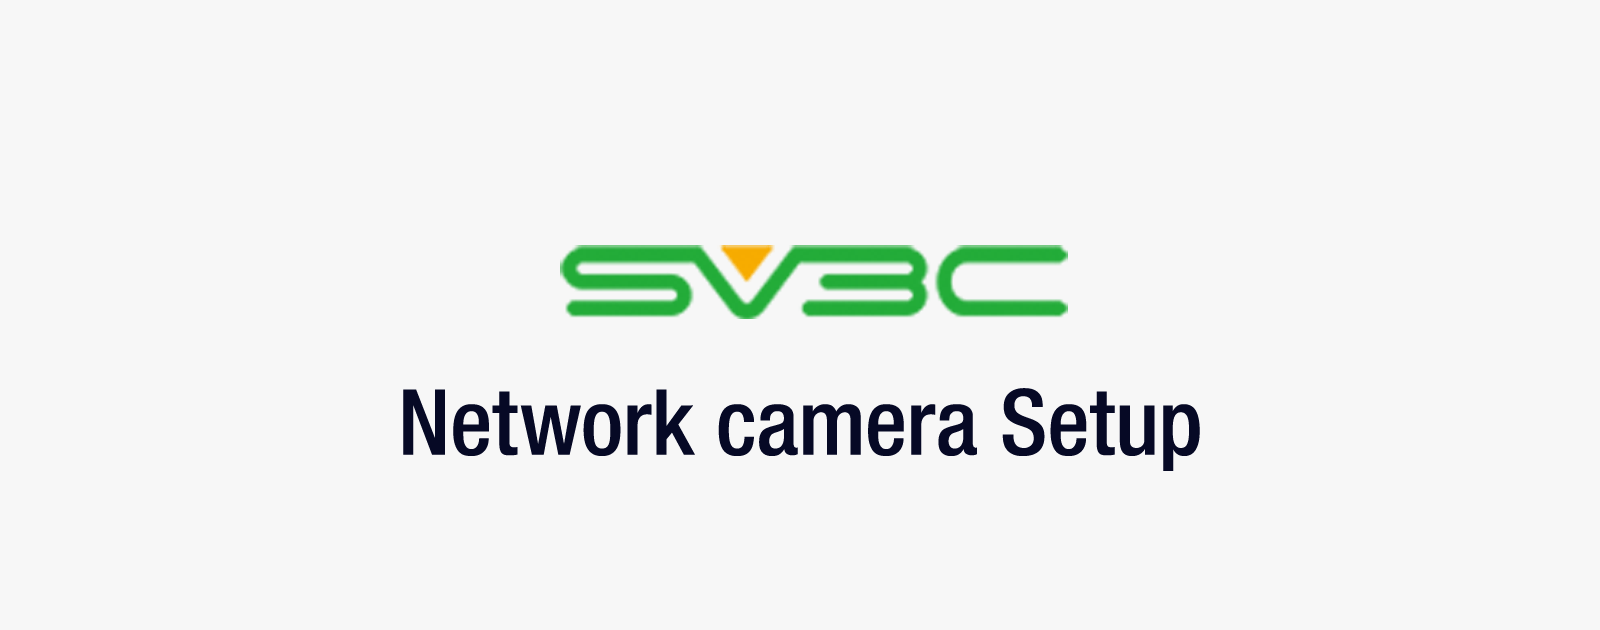 中華製の監視カメラ「SV3C」で撮影した動画をavi形式へ変換する方法